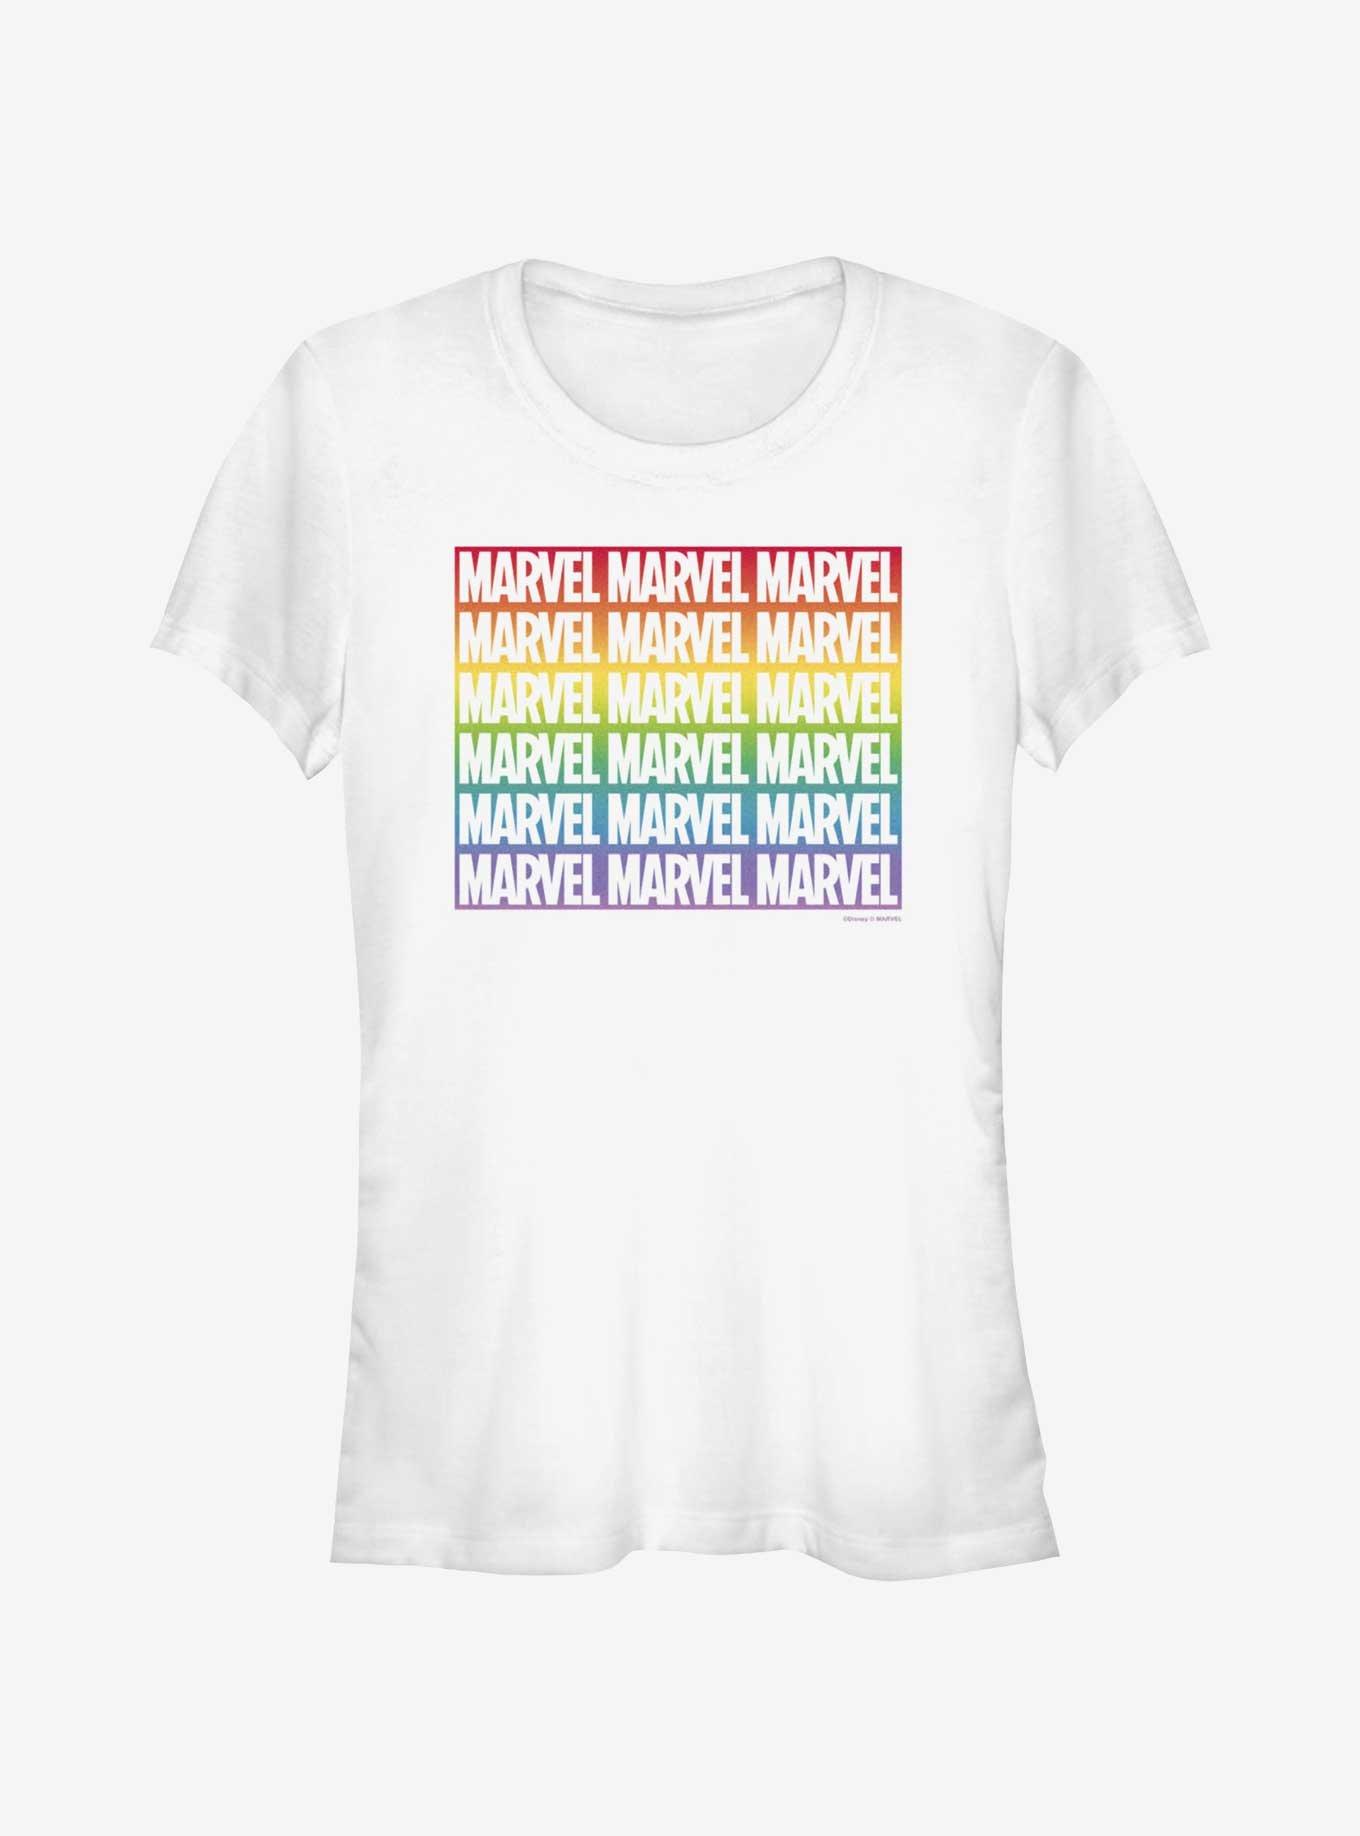 Marvel Avengers Marvel Boxed Gradient Pride T-Shirt, WHITE, hi-res